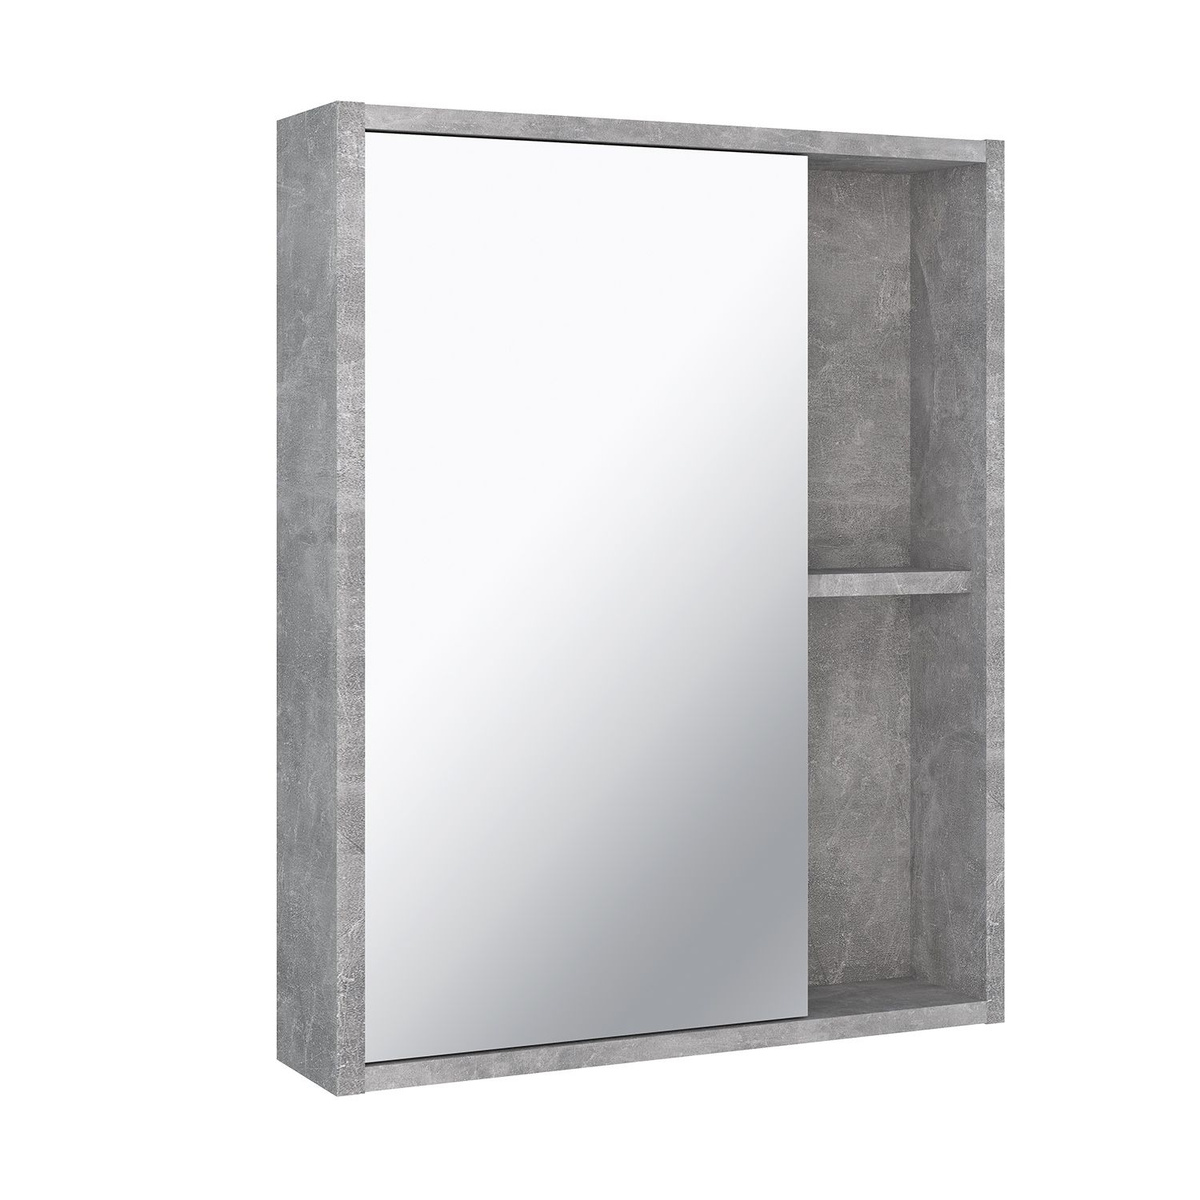 Зеркало шкаф для ванной / Runo / Эко 52 / серый бетон /Текст при отключенной в браузере загрузке изображений